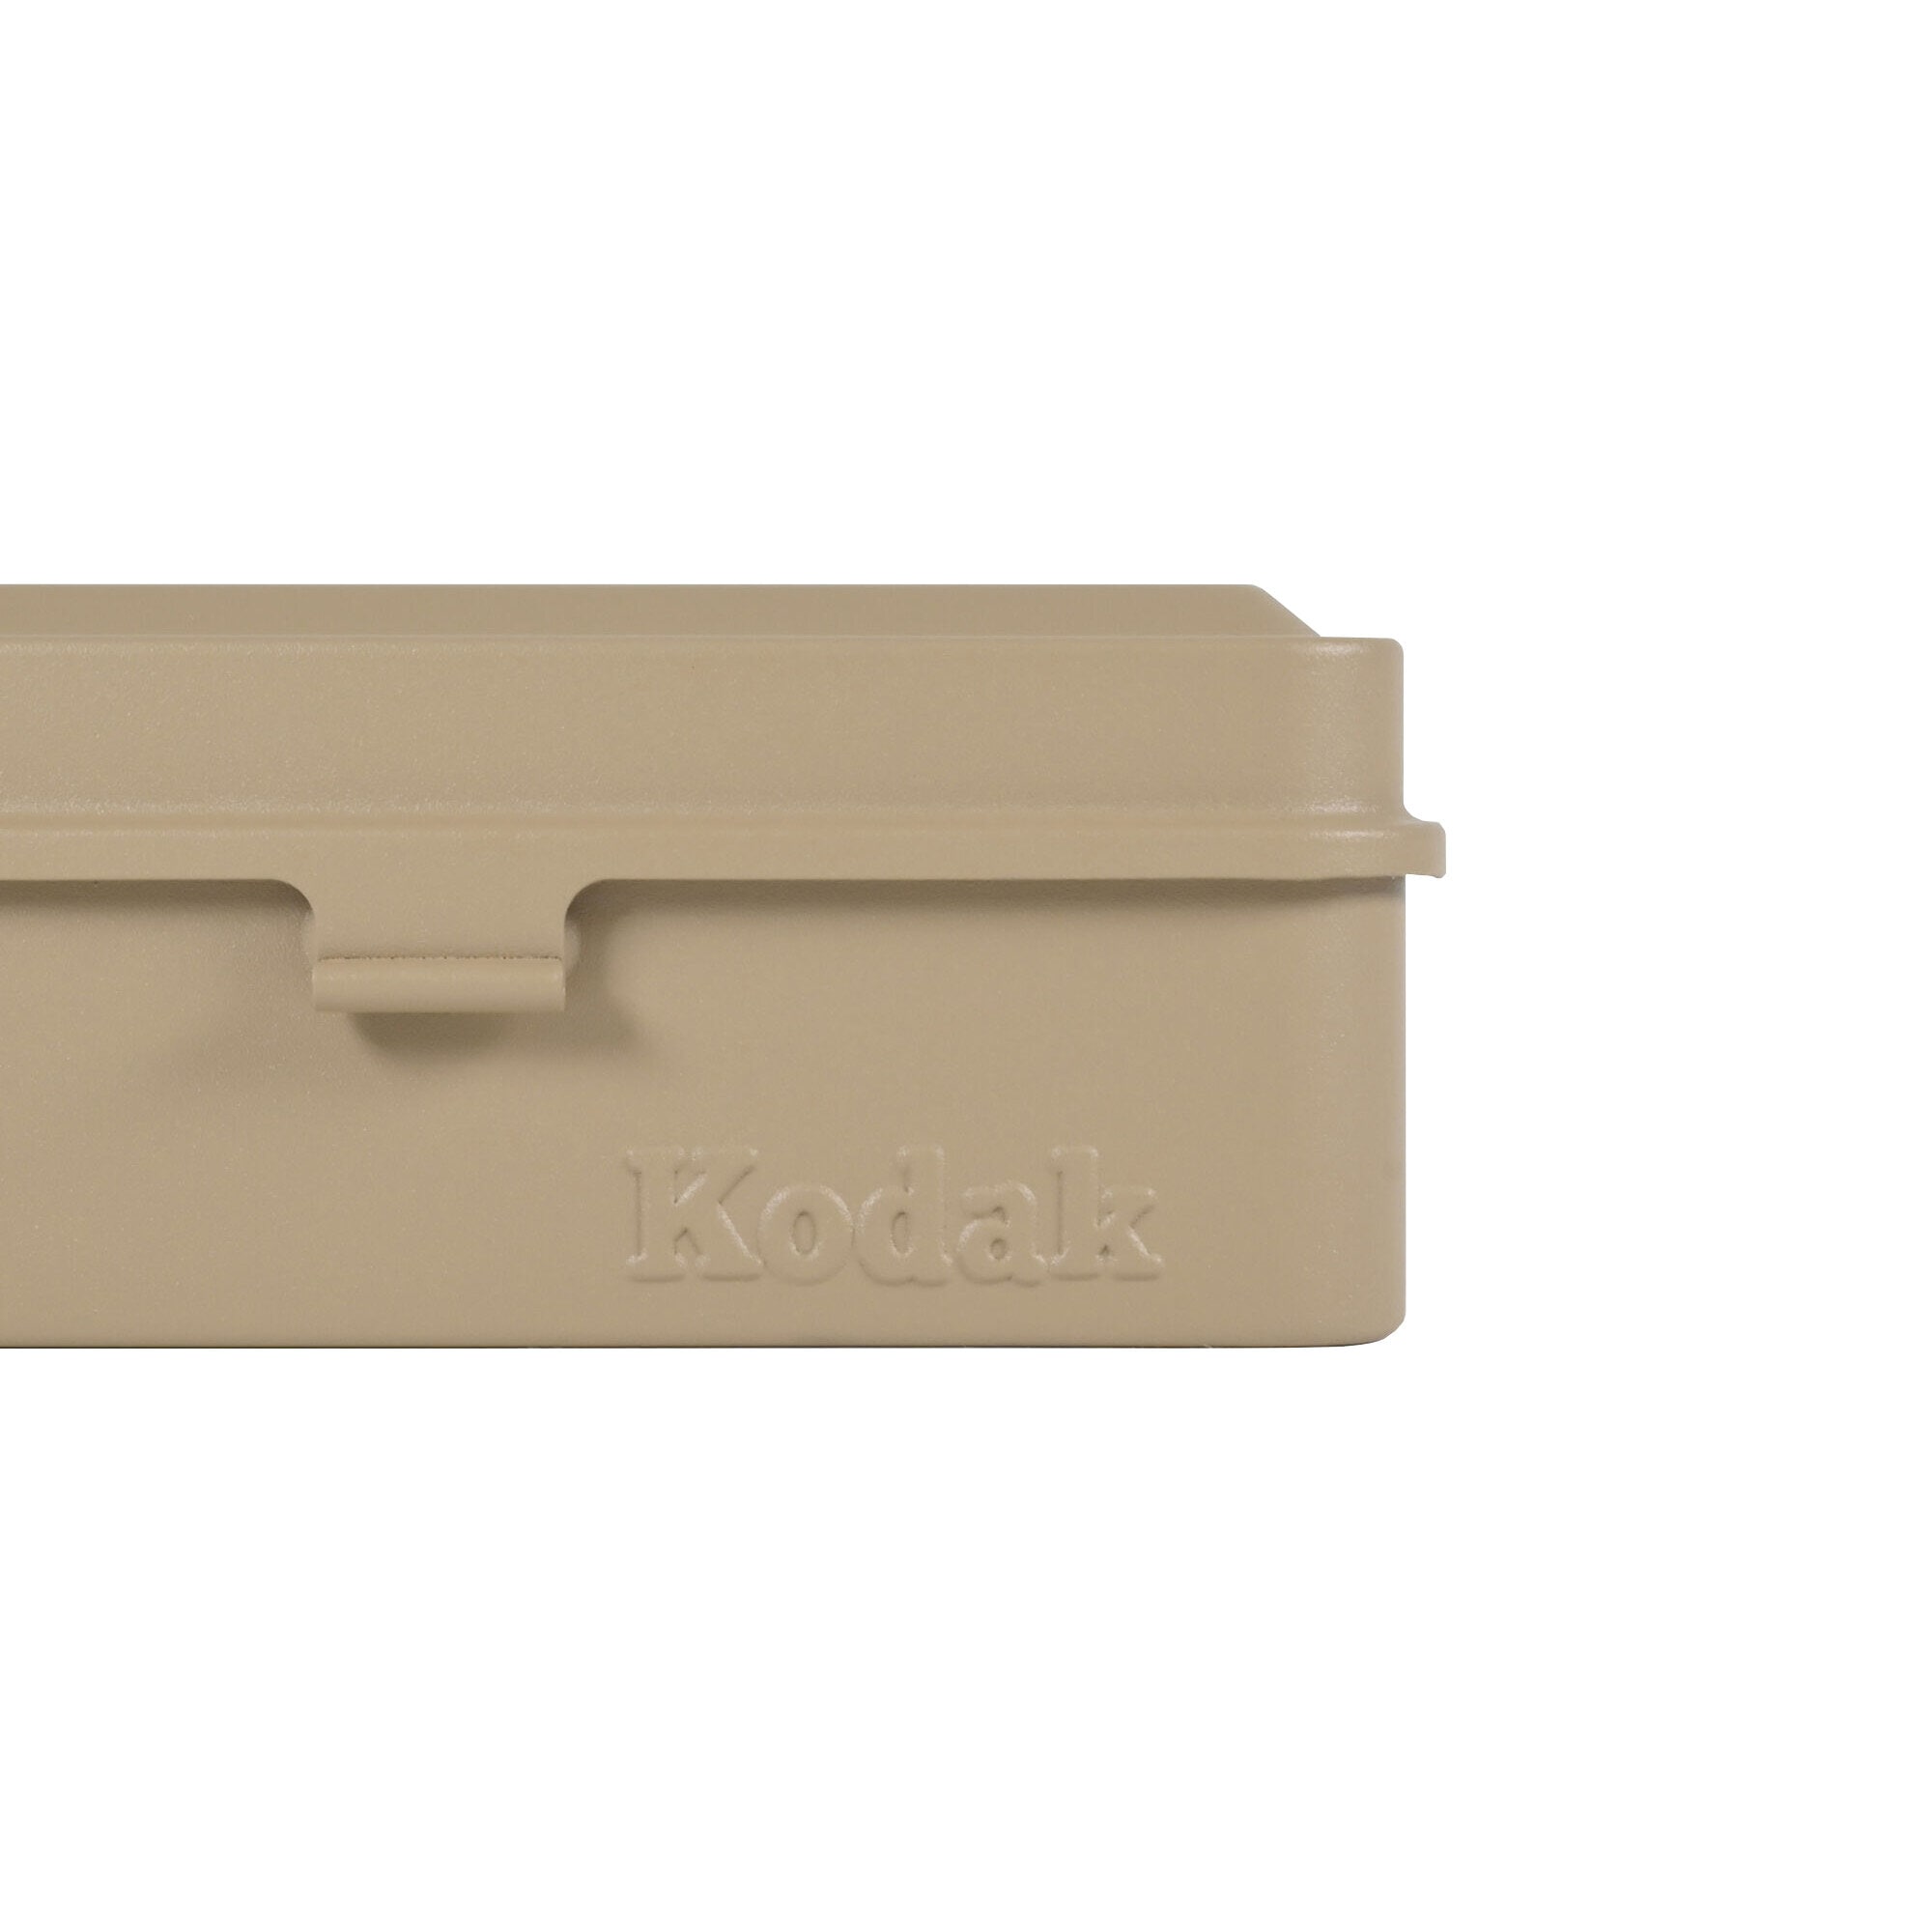 Kodak Film Steel Case Beige 120/135